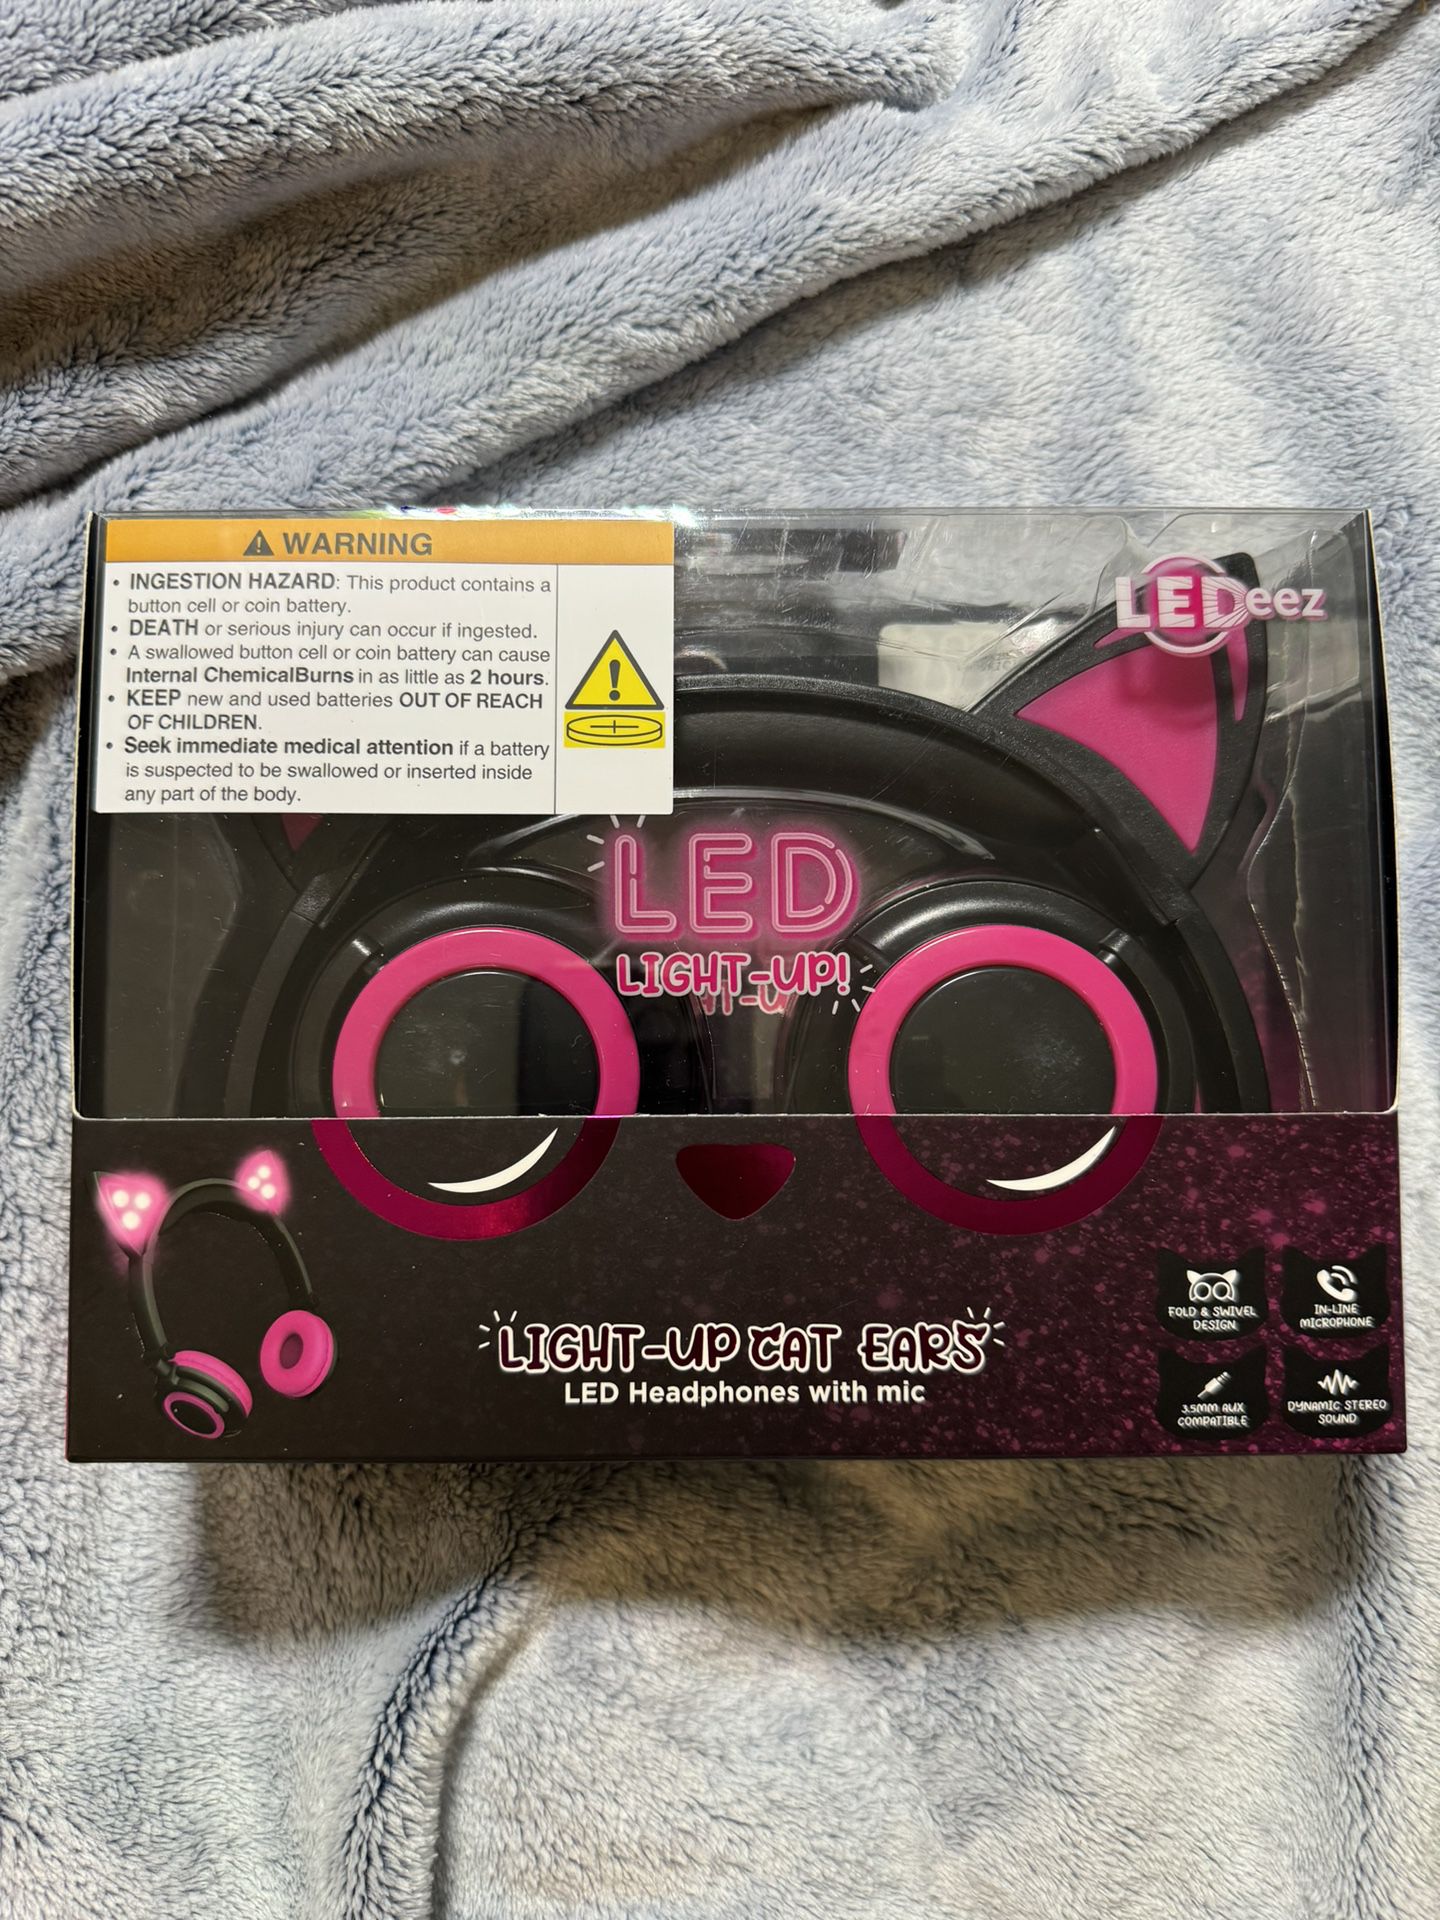 LEDeez Led Lights-Up Cat Ears Headphones with Mic Pink 3.5mm AUX